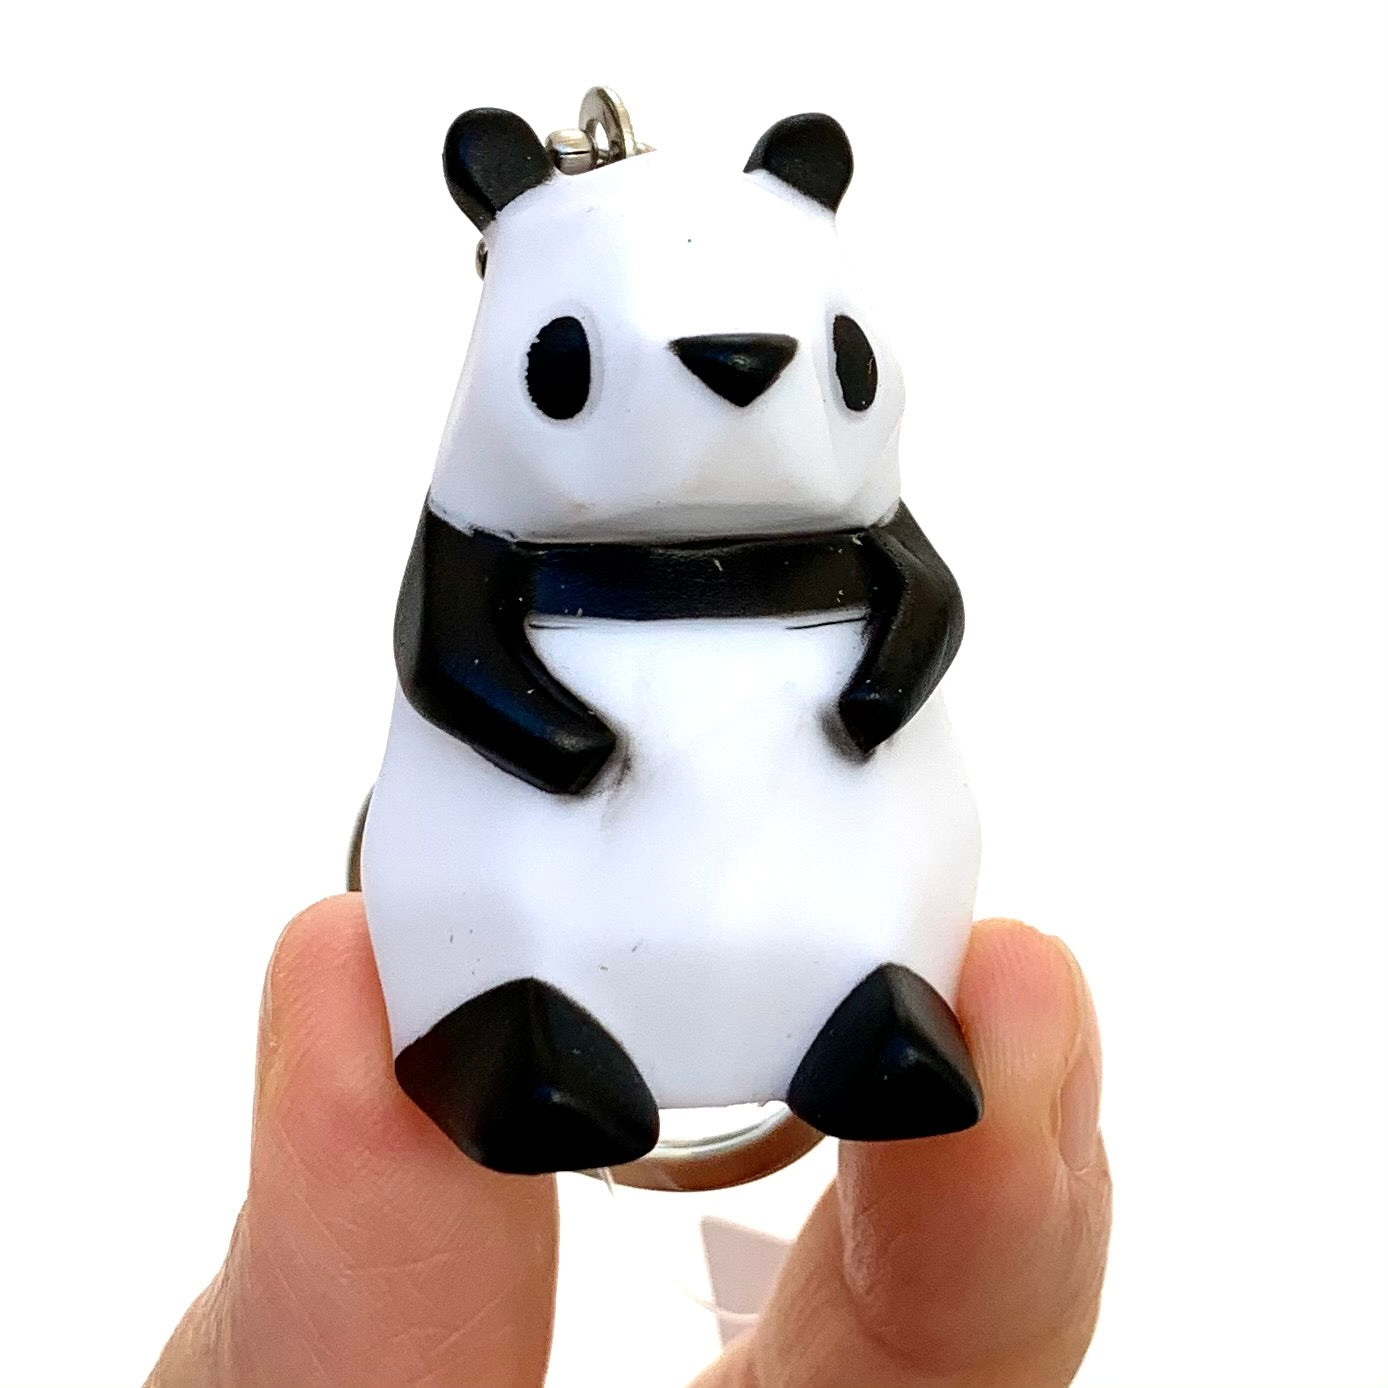 Teen Panda Gift Set Squishy Sketch Book Panda Ears Sticker Pouch GS2-1004